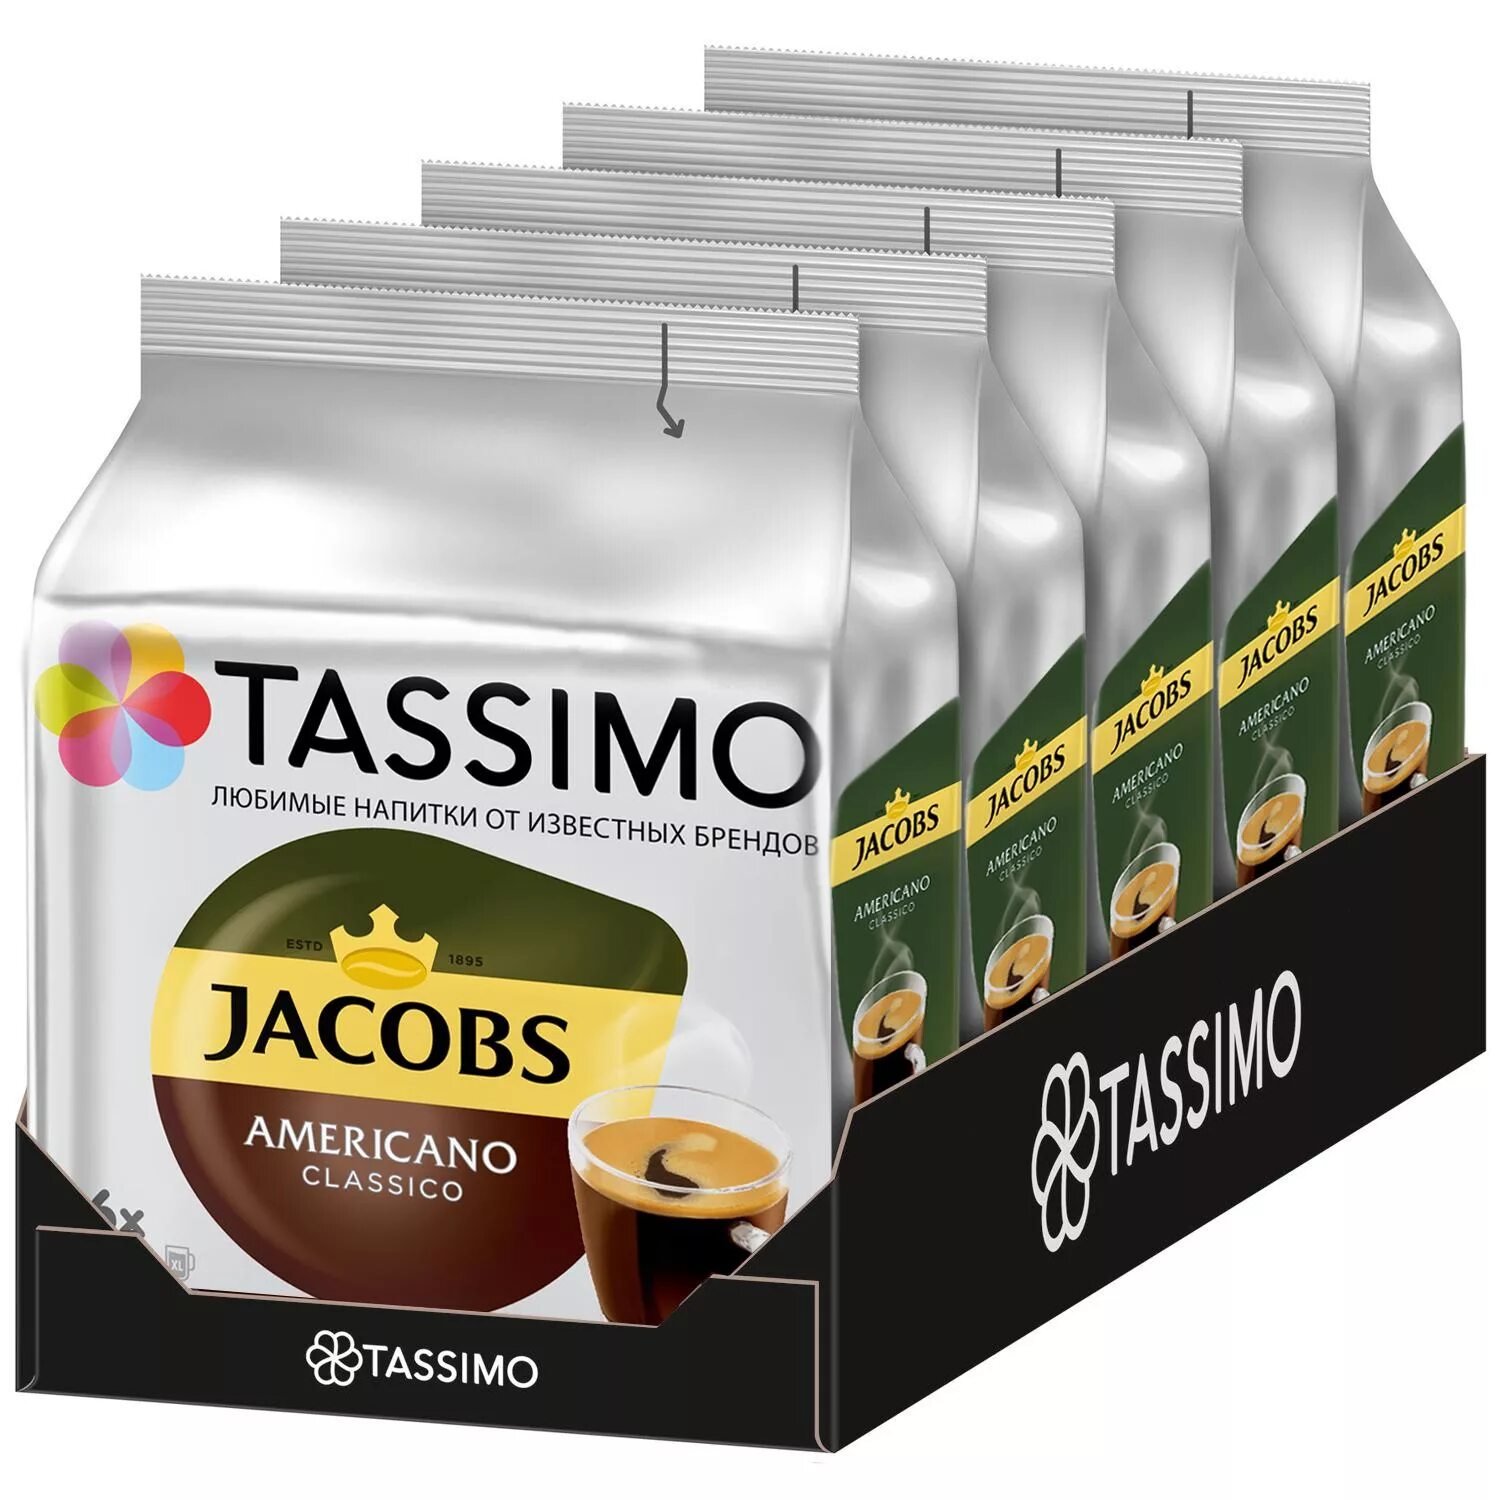 Купить т капсулы. Кофе в капсулах Tassimo. Якобс Тассимо капсулы американо. Капсулы для кофемашины бош Тассимо. Кофе Тассимо американо капсулы.